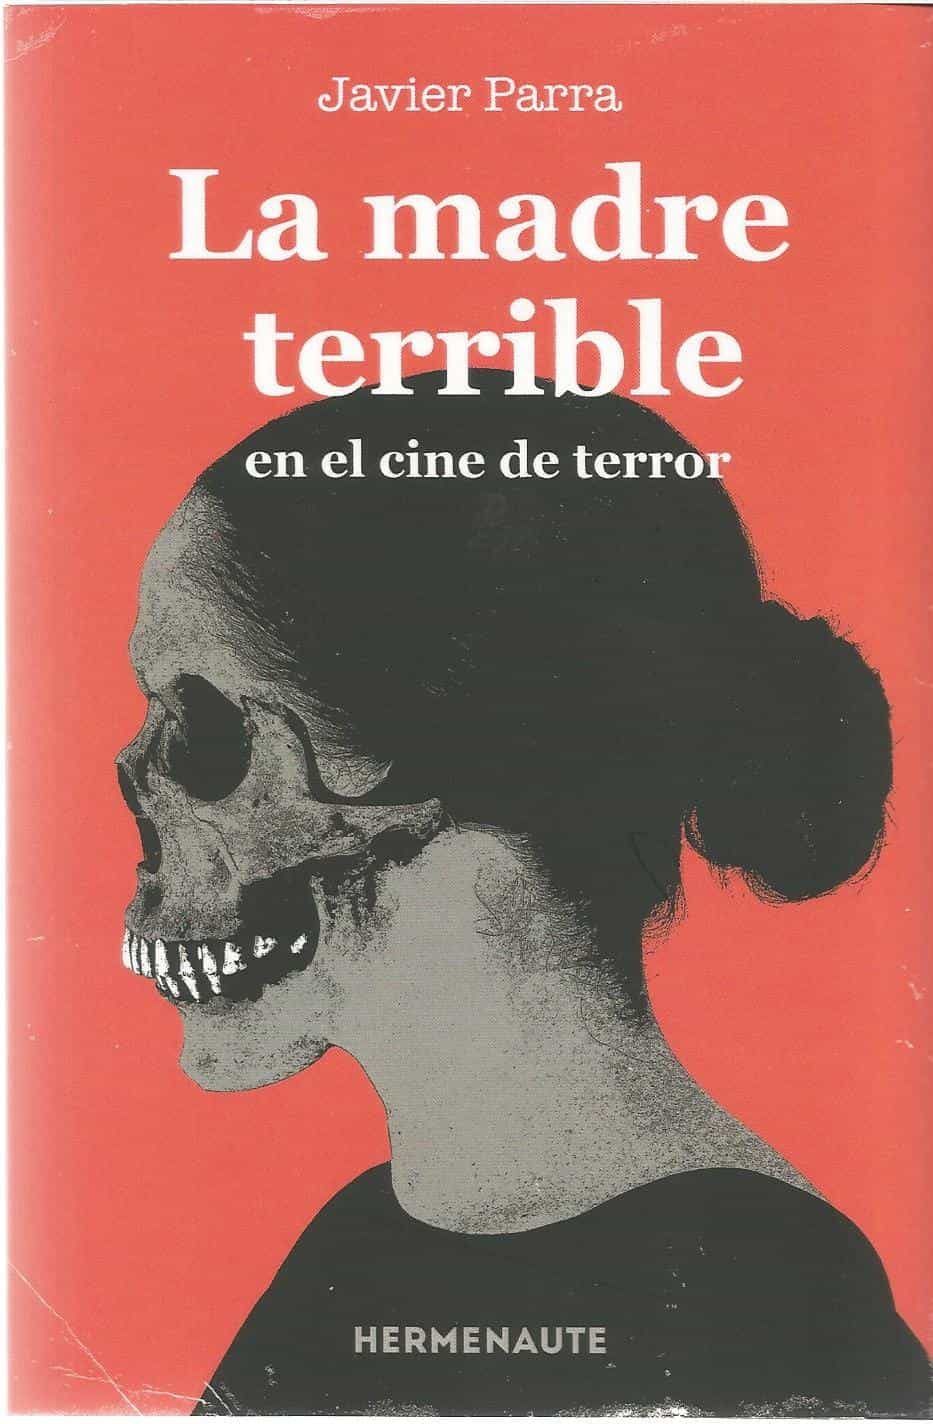 LA MADRE TERRIBLE EN EL CINE DE TERROR. 